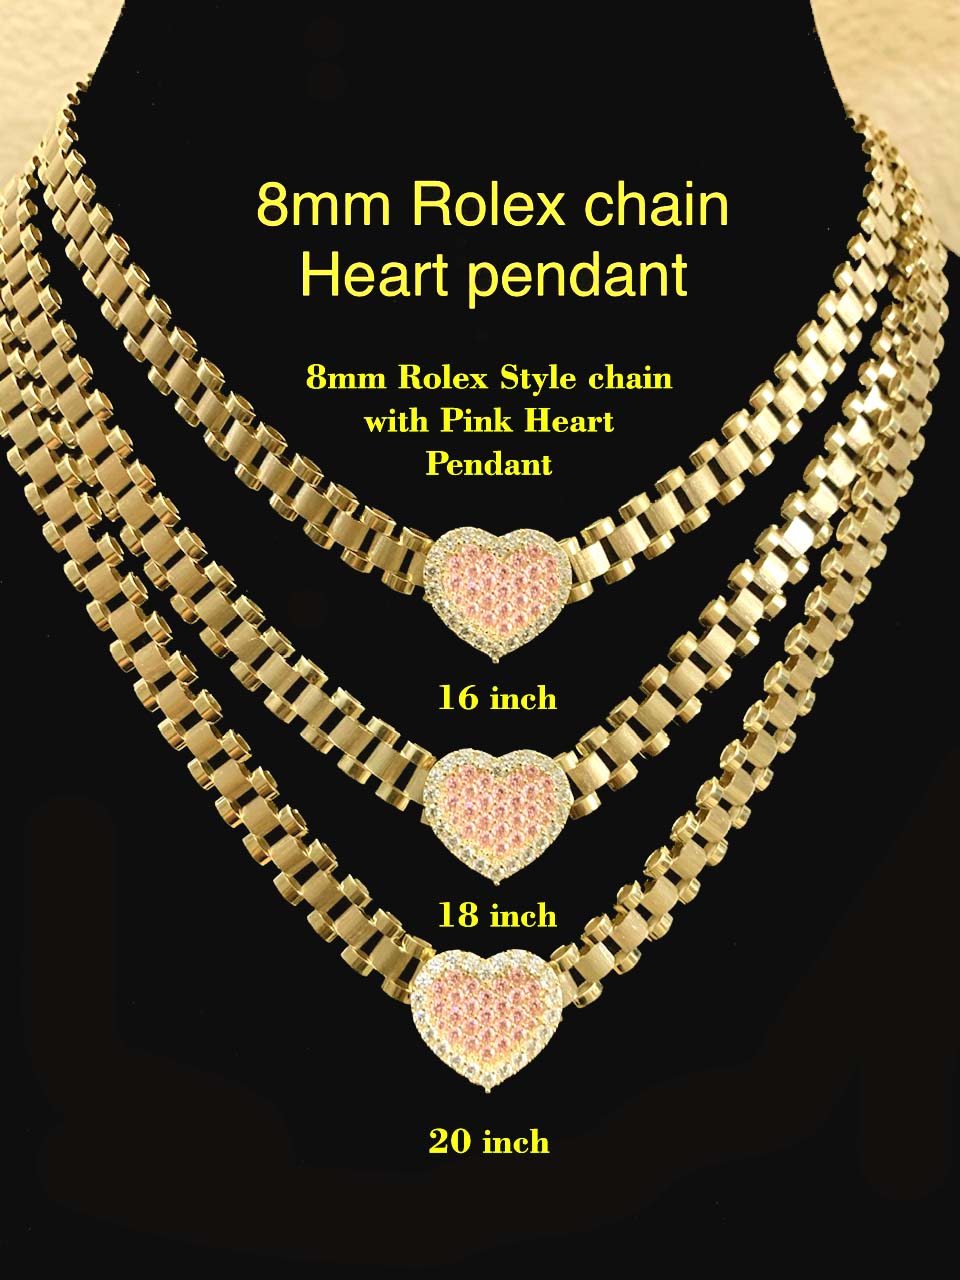 rolex pendant chain